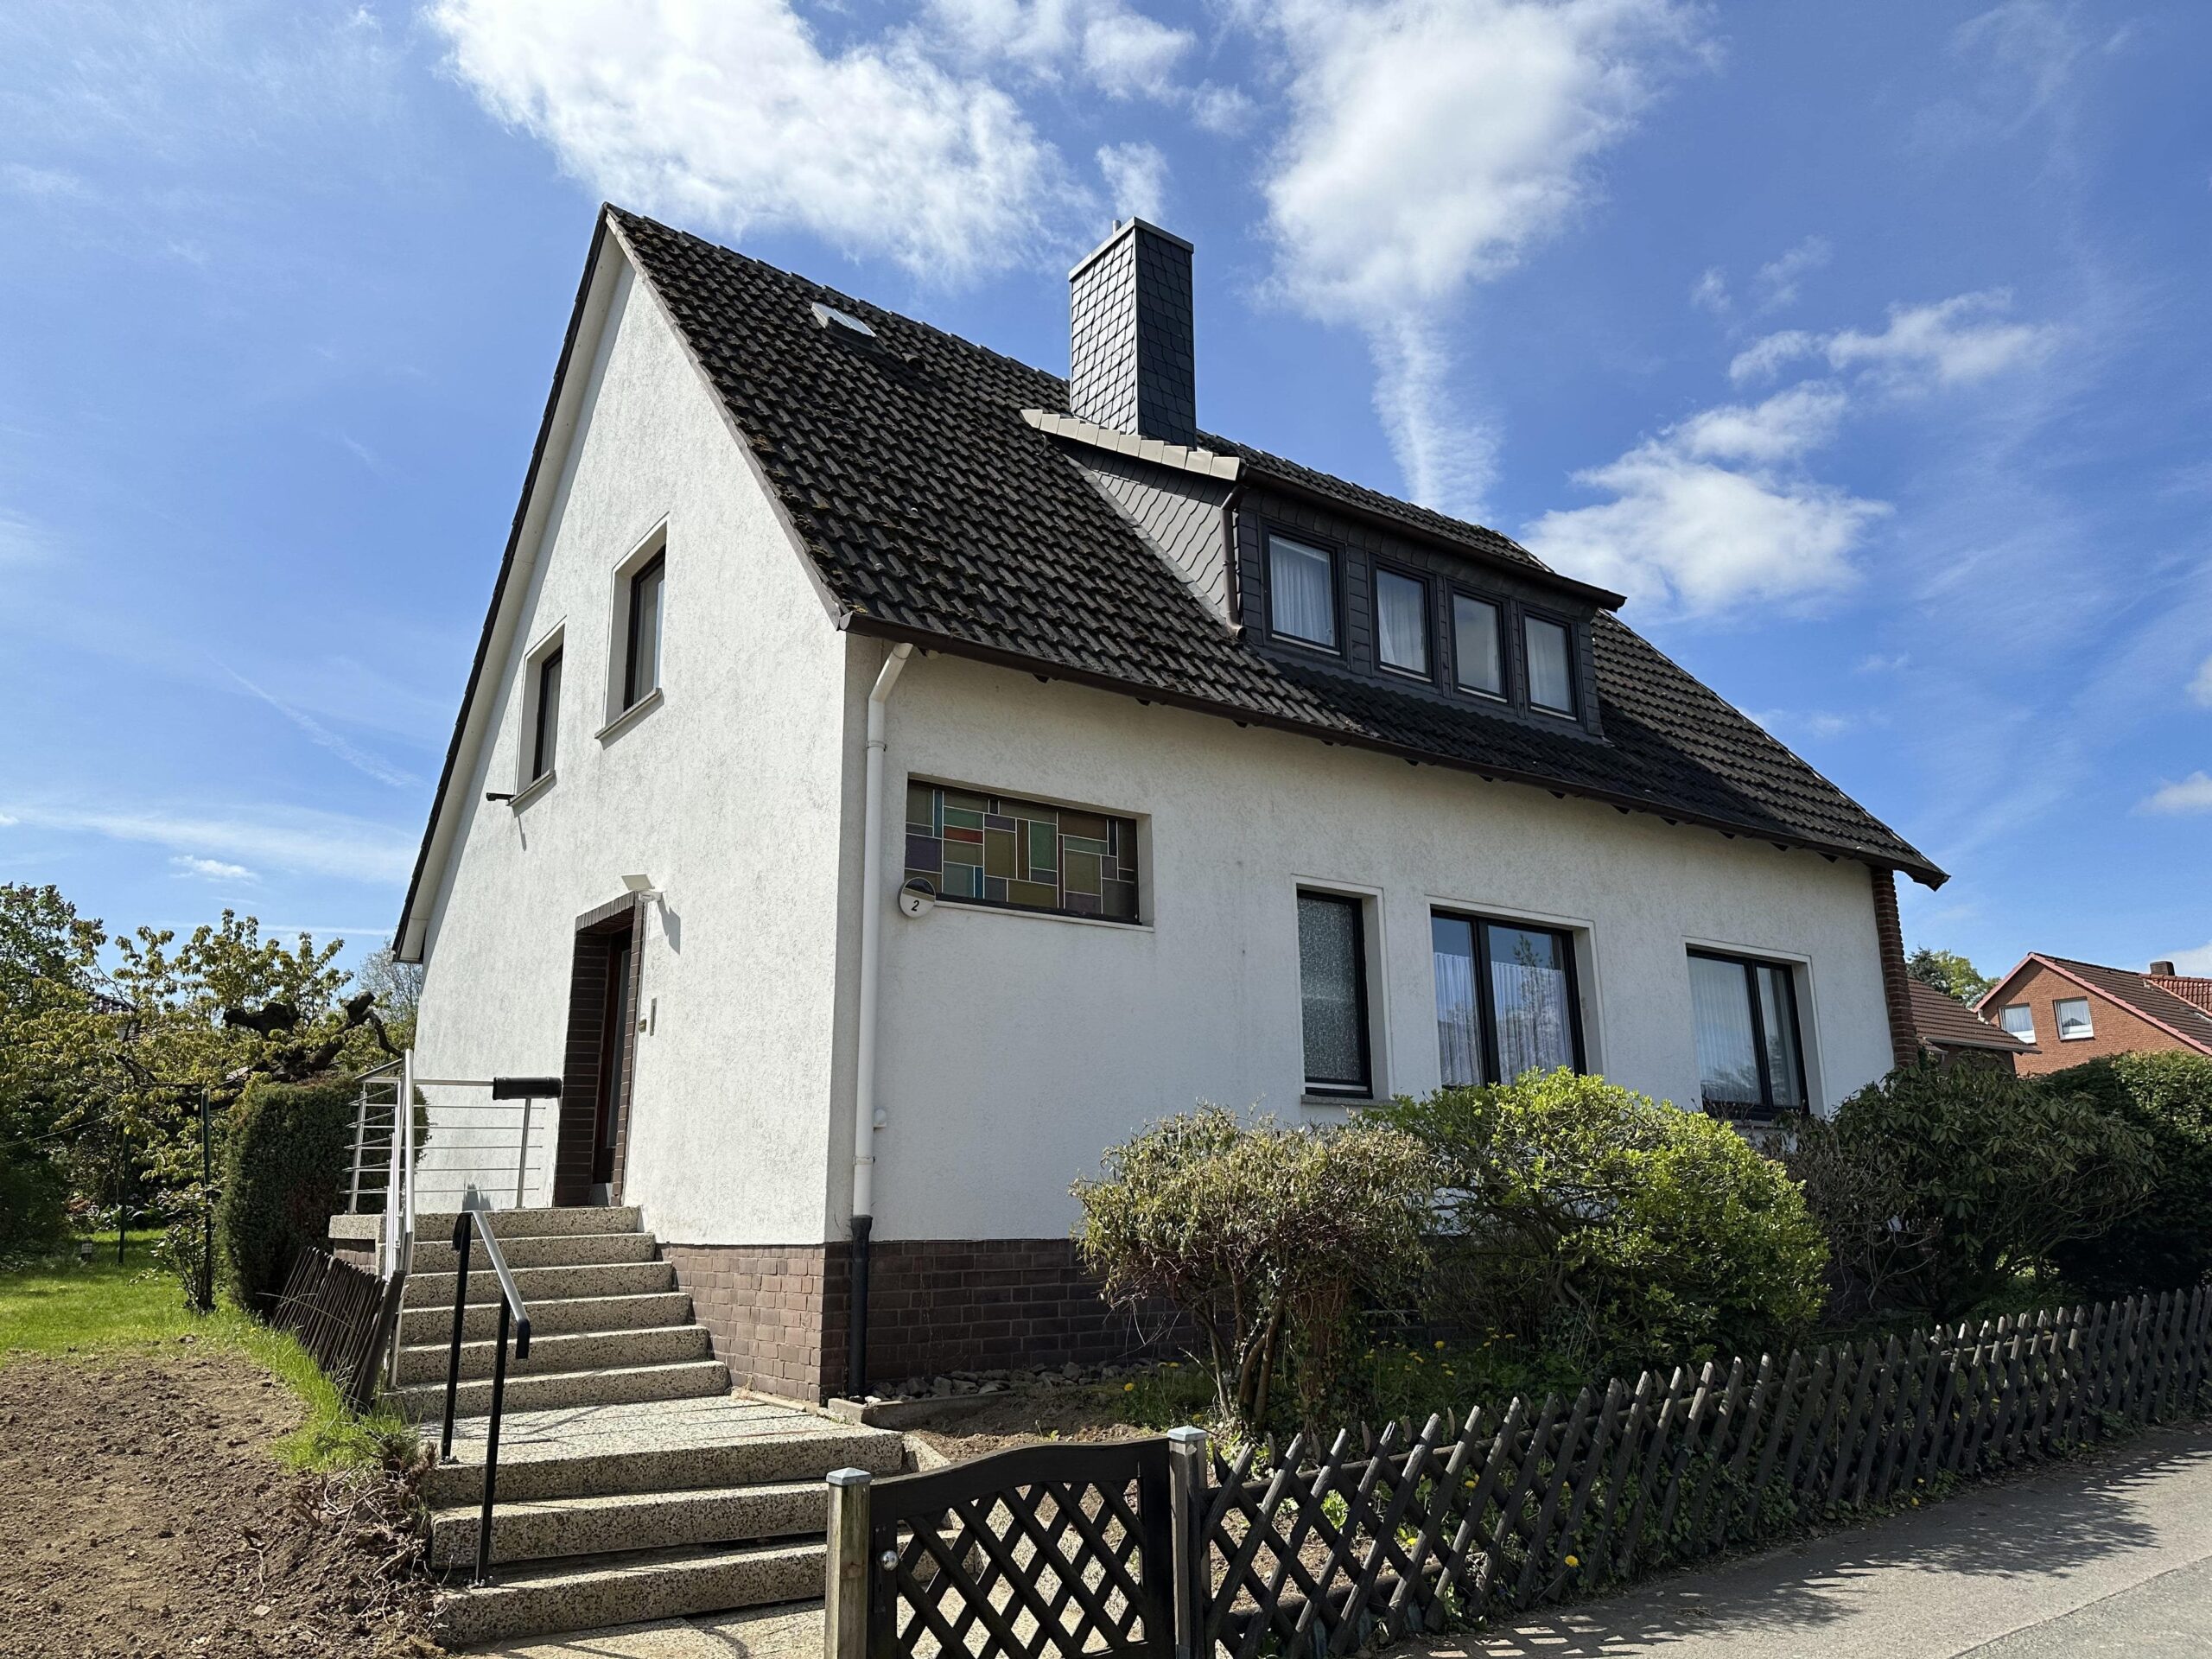 Gemütliche Dachgeschosswohnung mit neuer Einbauküche, 30890 Barsinghausen, Dachgeschosswohnung